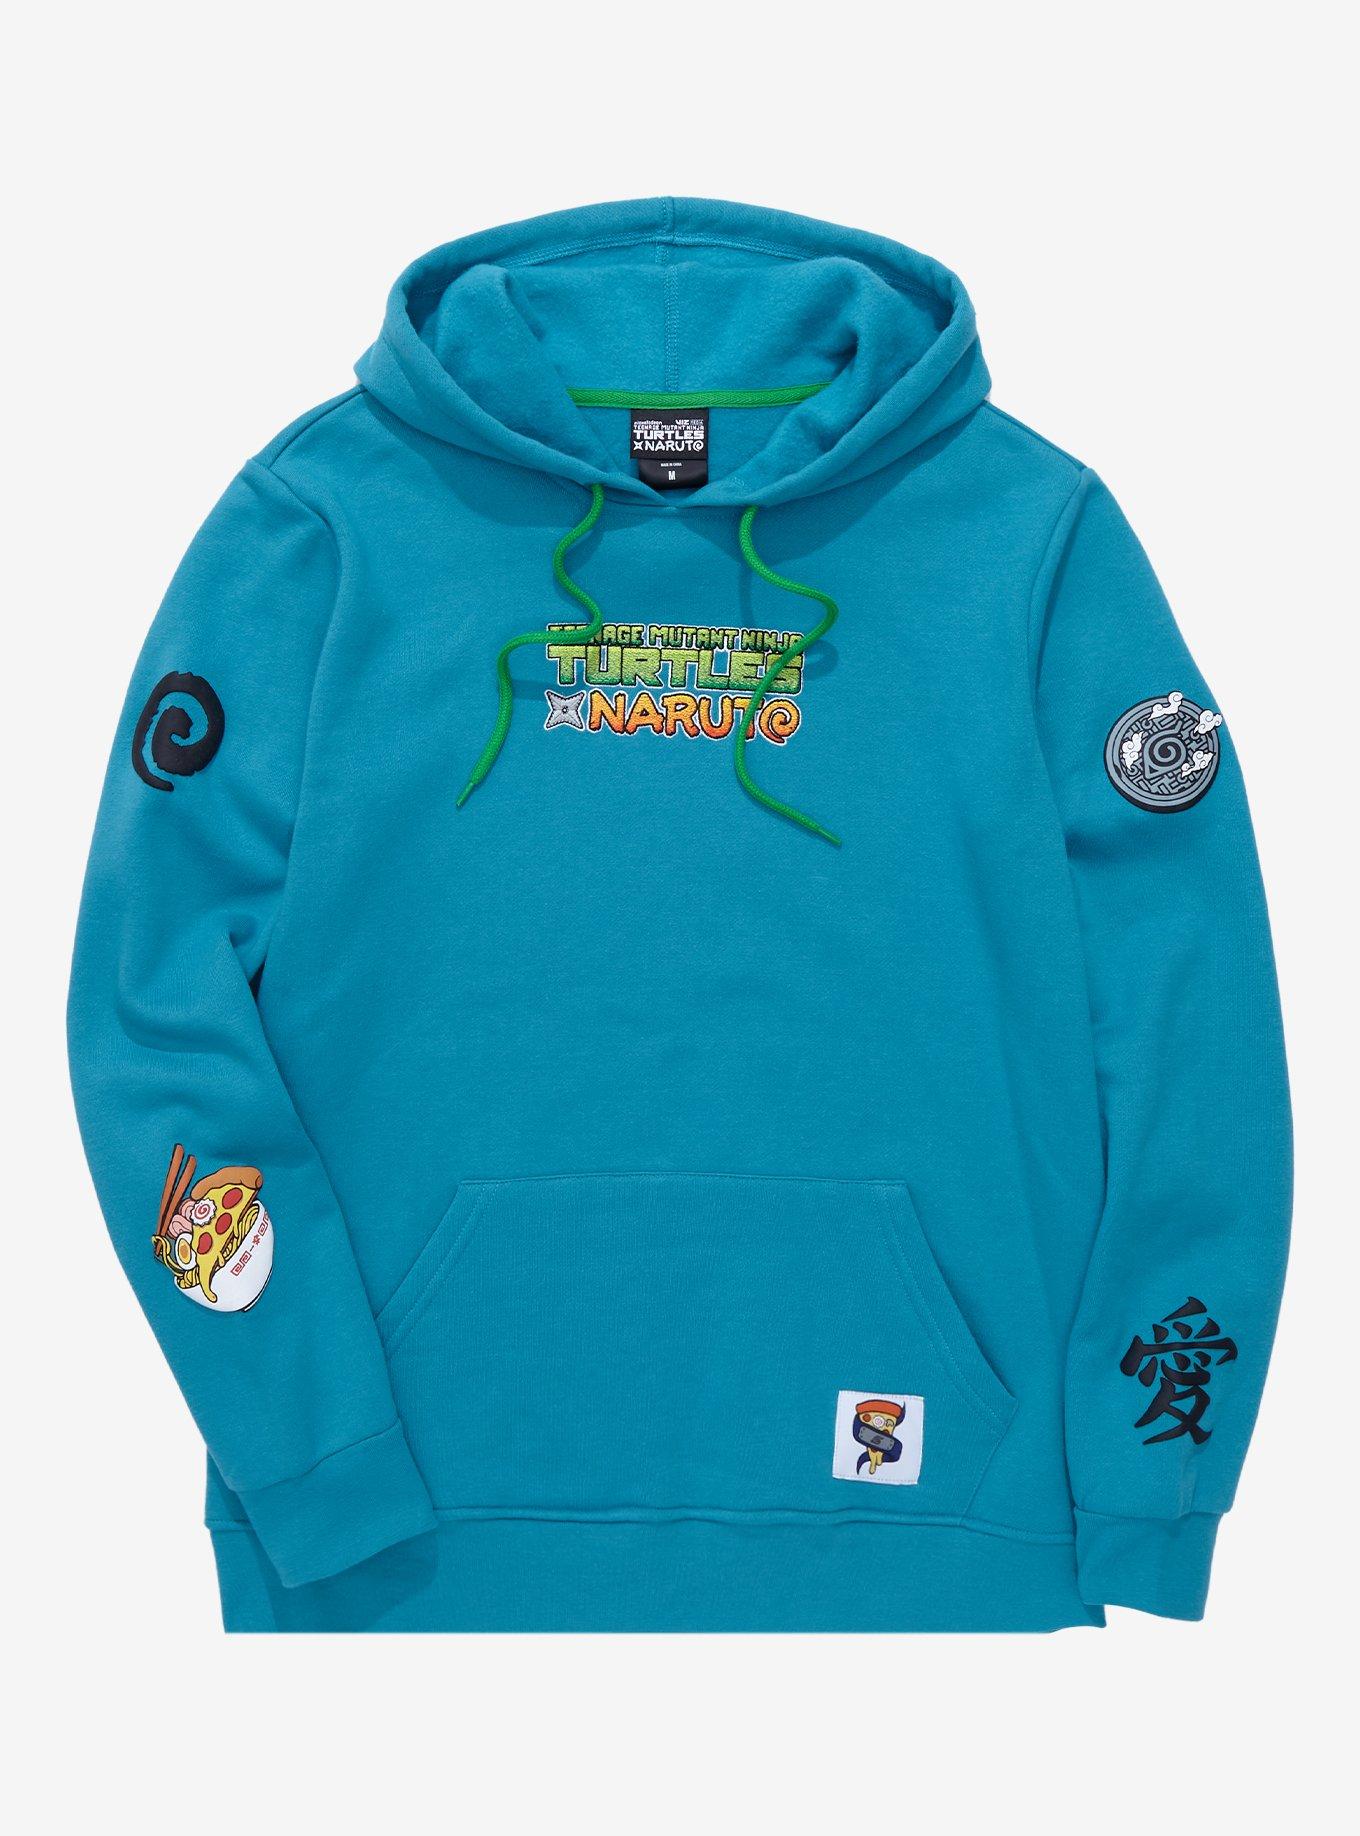 Naruto x LV inspire design hoodie  Naruto hoodie, Hoodies, Naruto